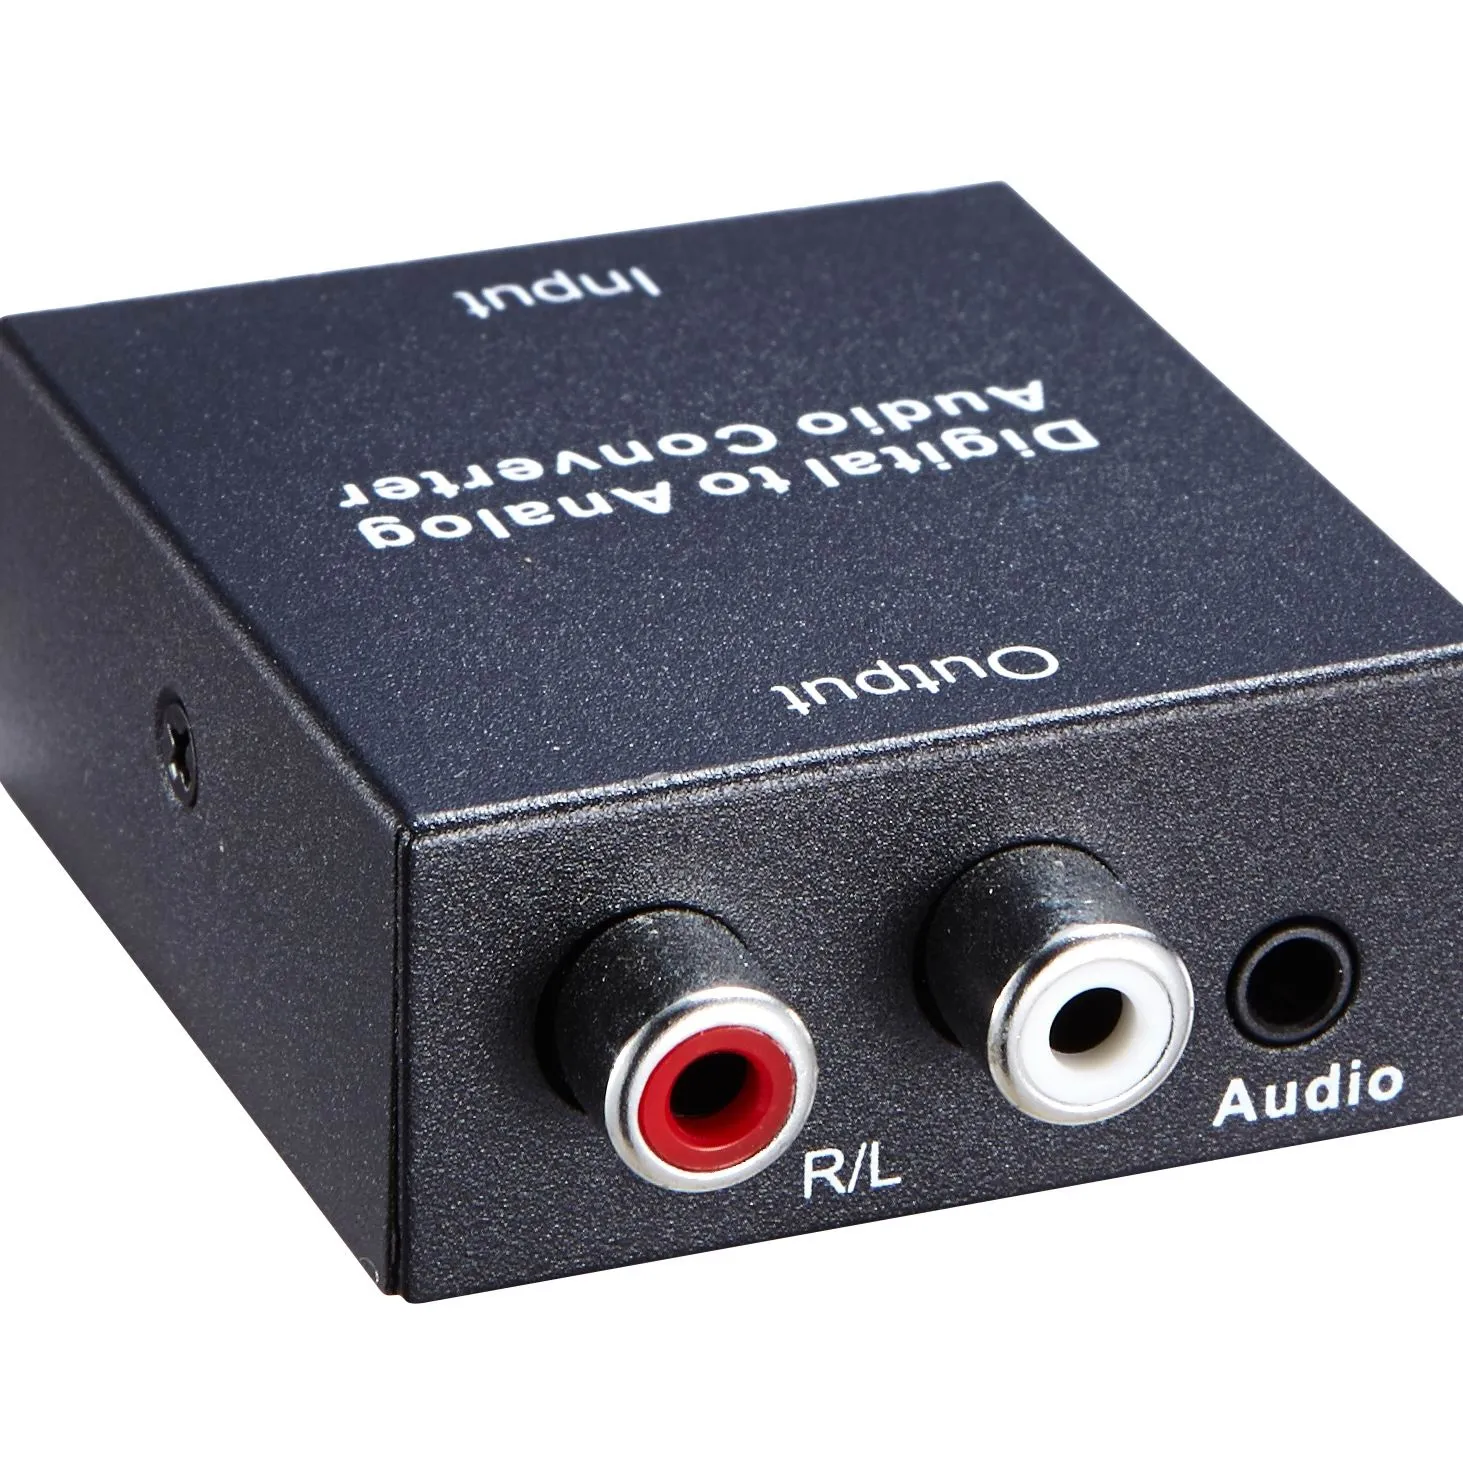 Terbaik sale hdmi audio converter digital ke analog converter